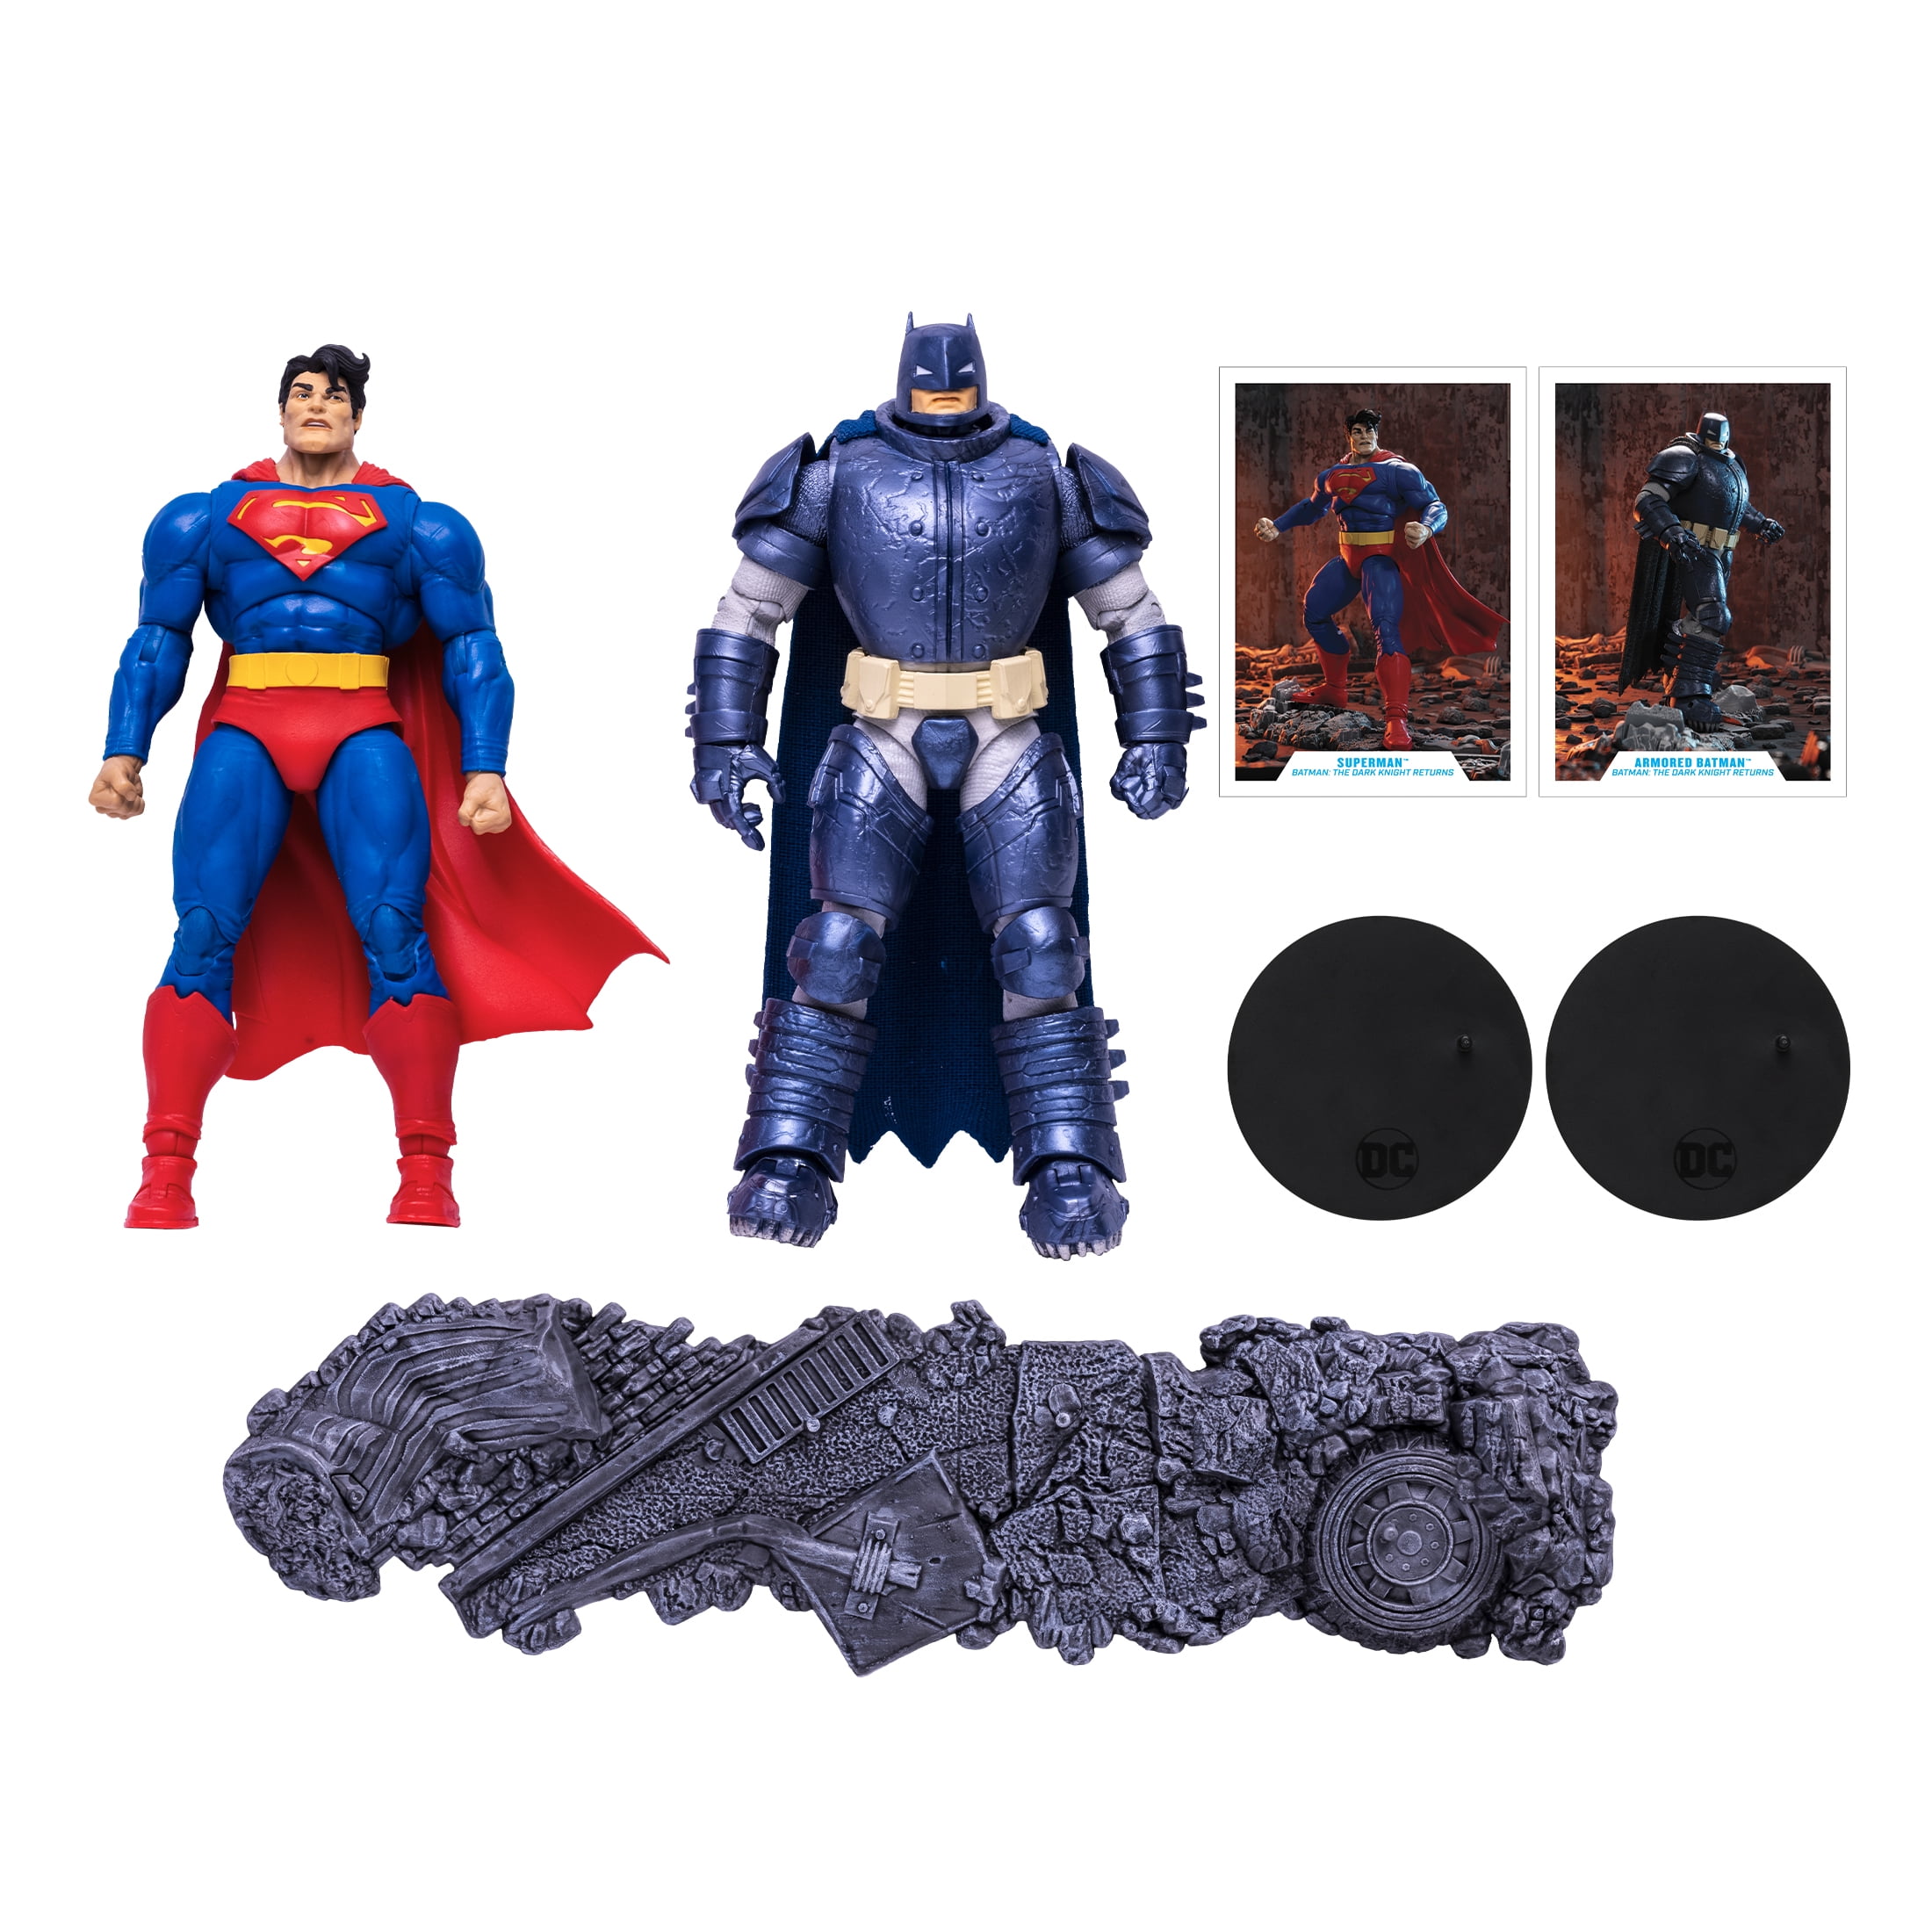 McFarlane Toys Batman 9 inch Action Figure for sale online 